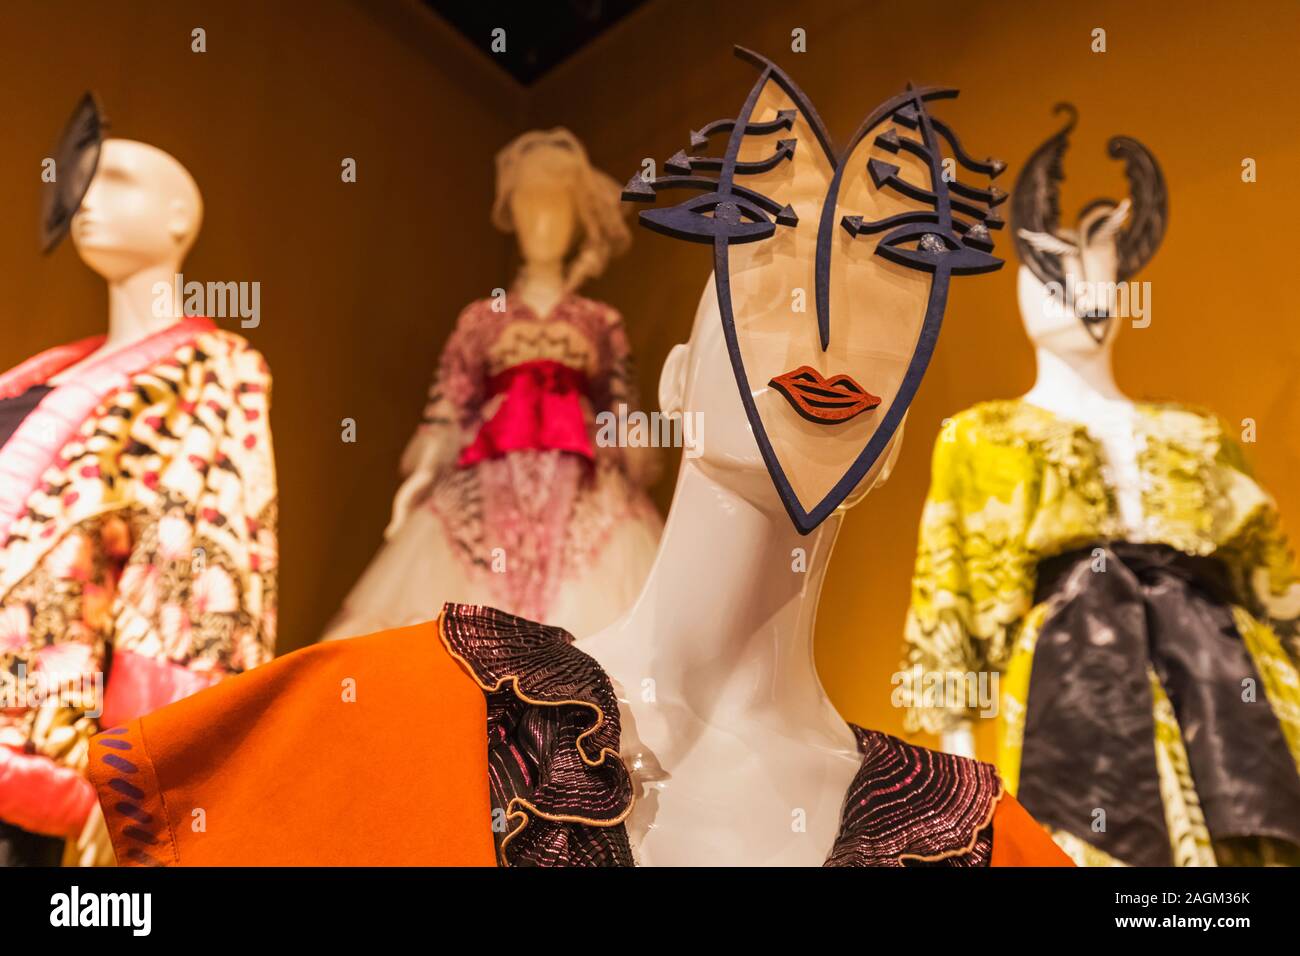 Inghilterra, Londra, Southwark, la moda e il museo tessile fondata dal designer britannico Zandra Rhodes, mostre di Zandra Rhodes progettazioni di abbigliamento Foto Stock